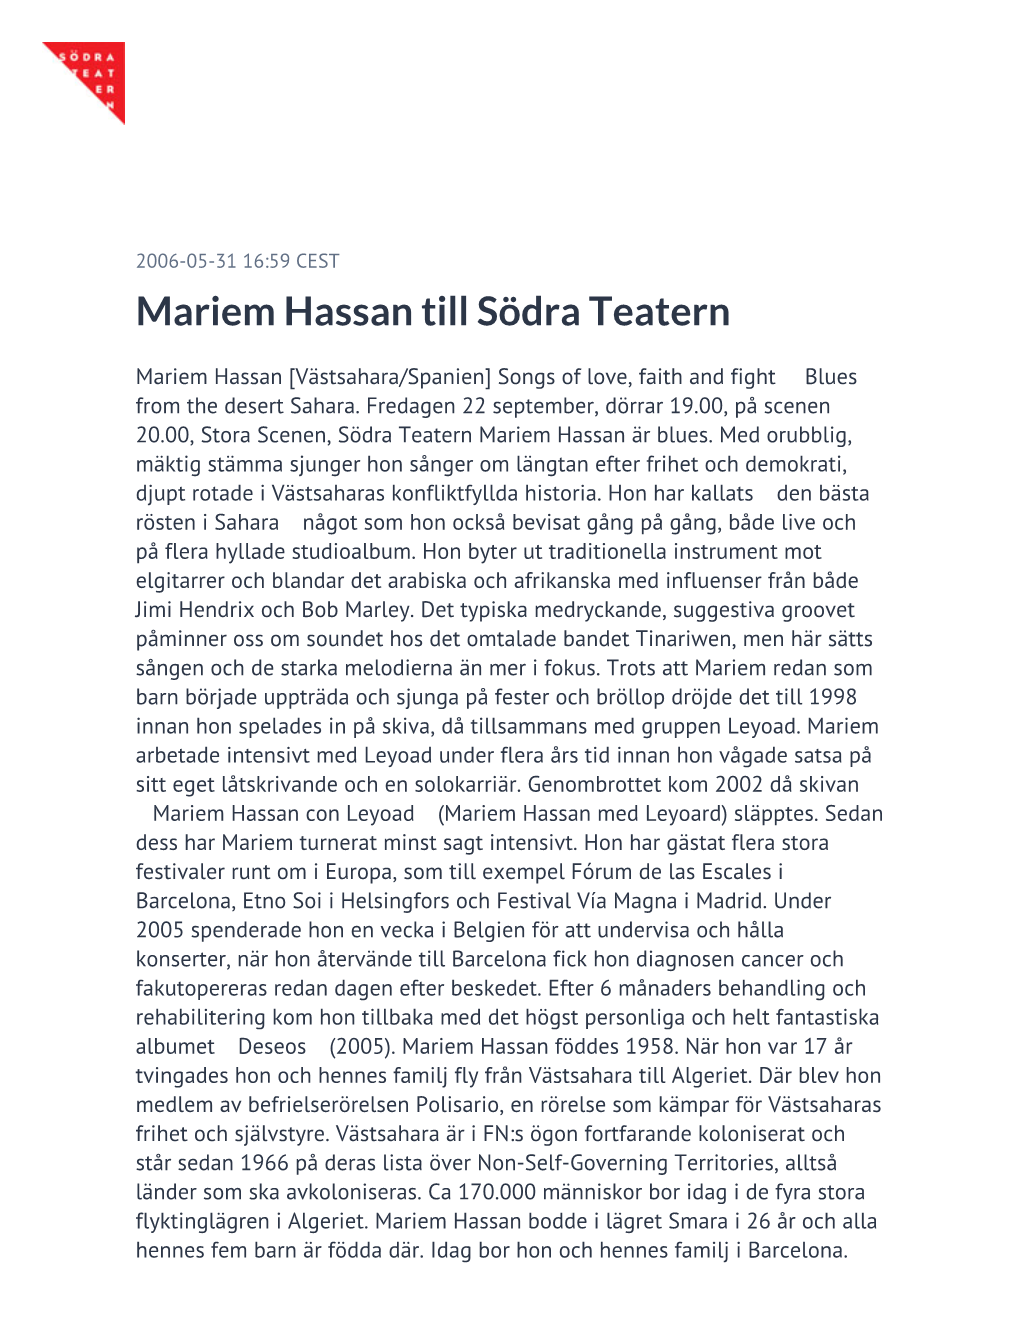 Mariem Hassan Till Södra Teatern